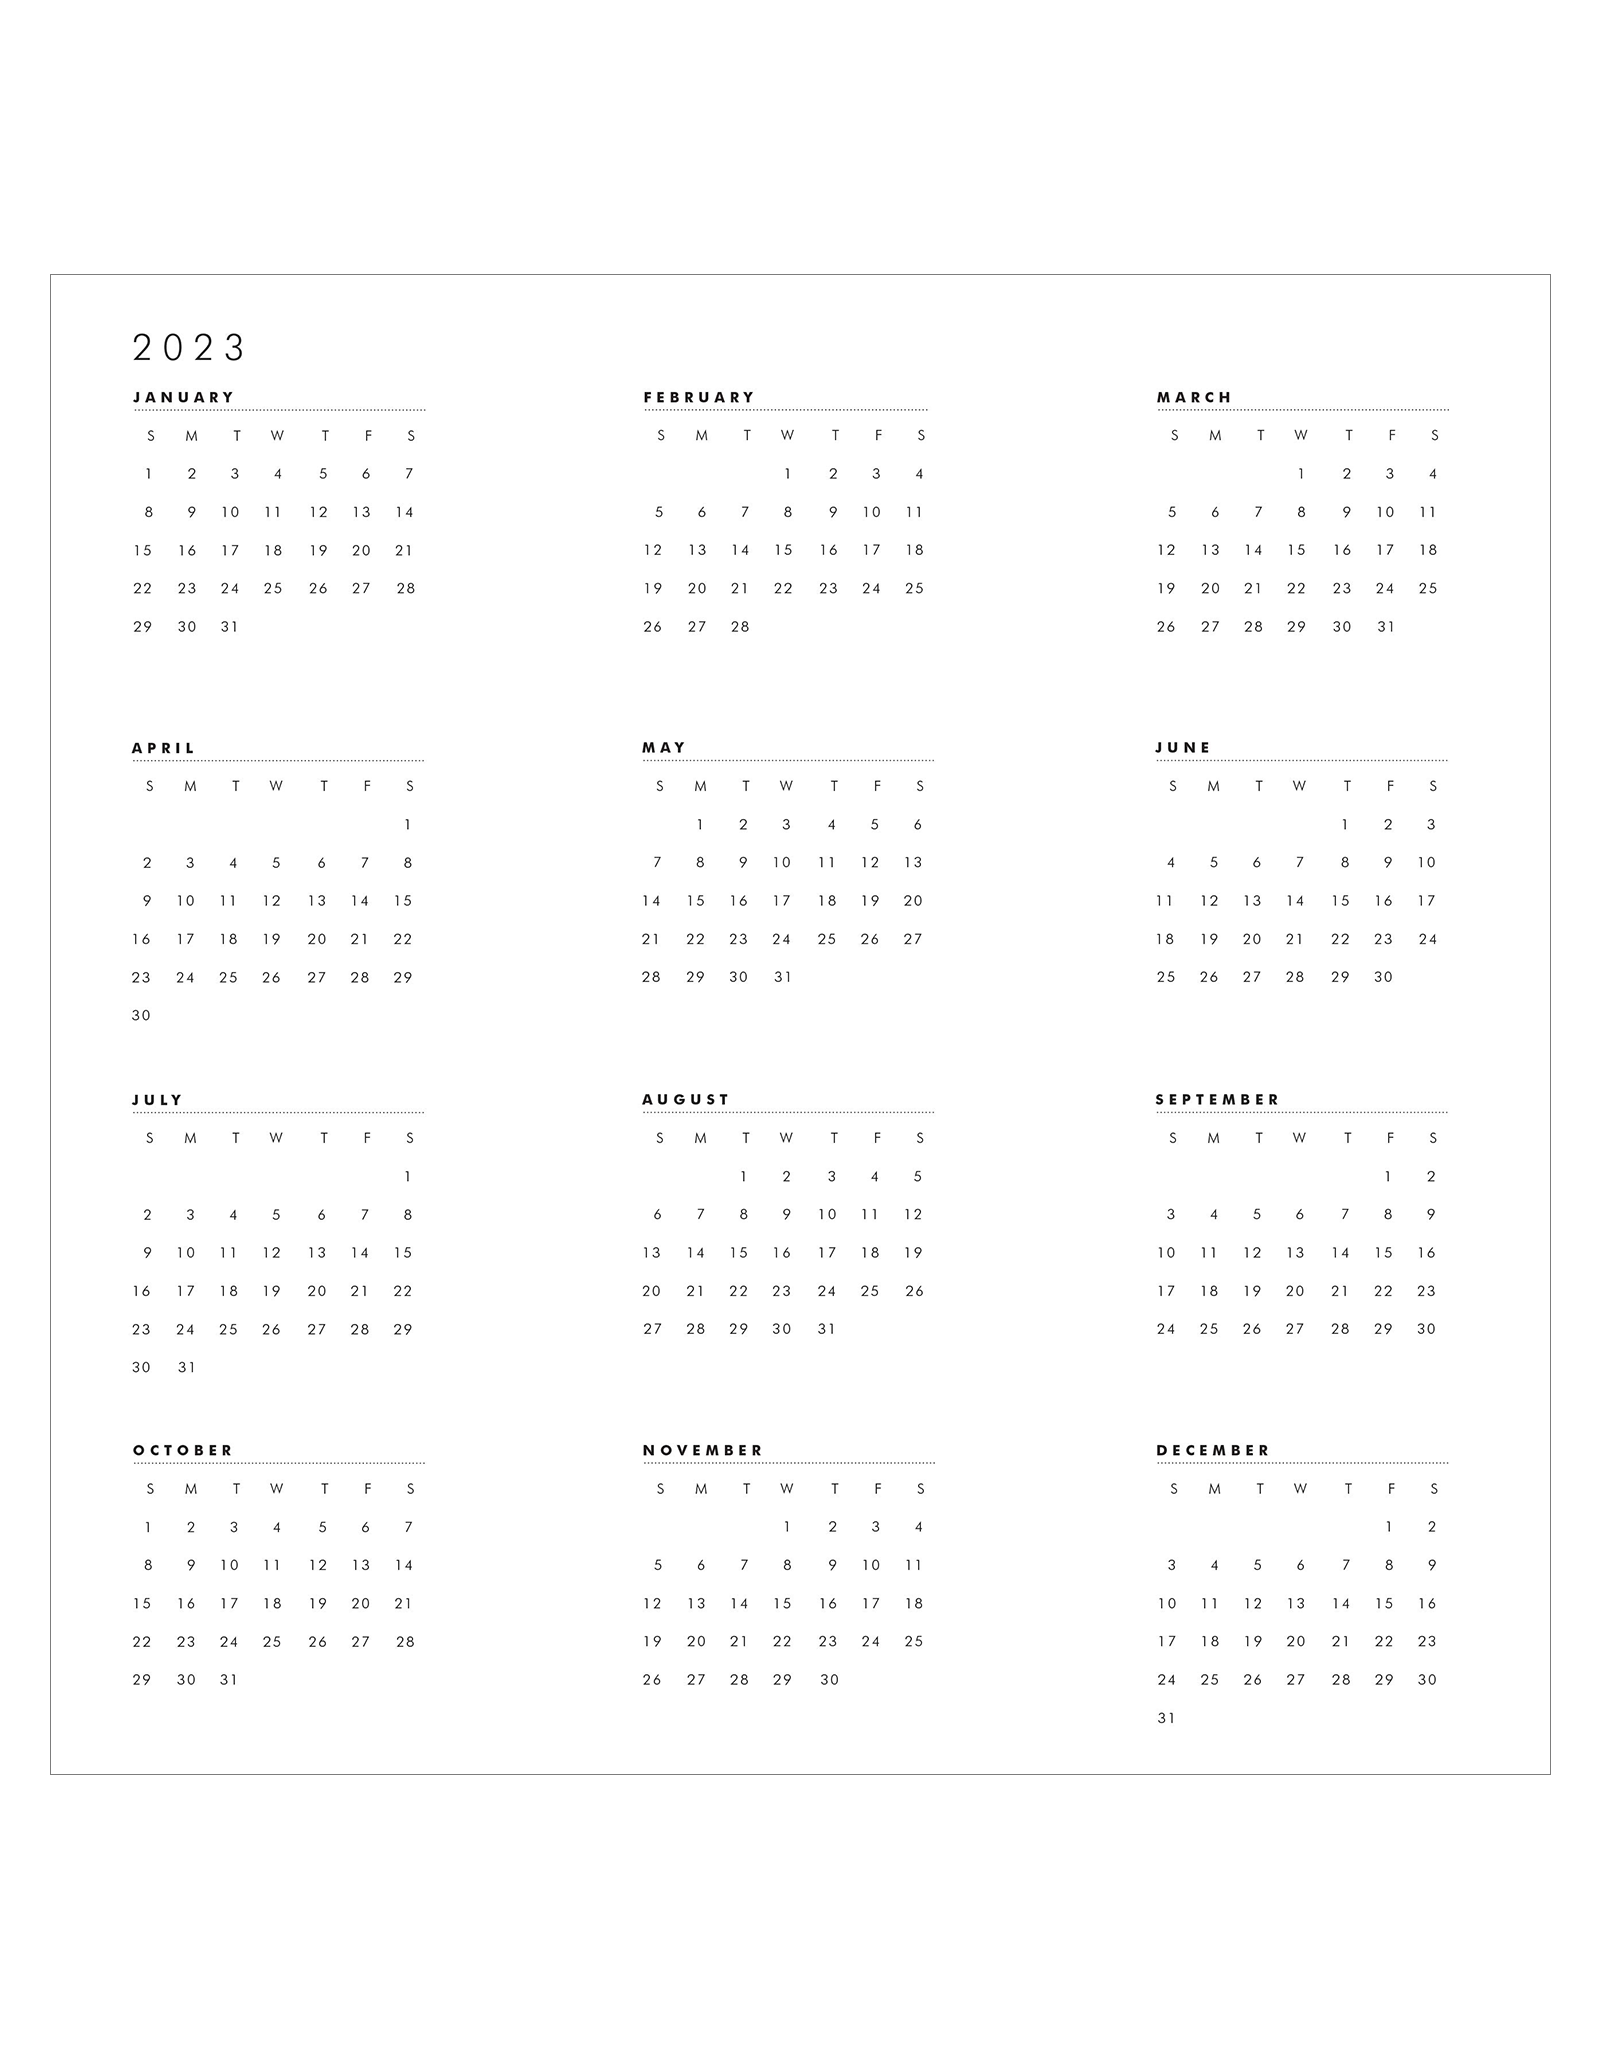 Ansel Adams 2022 Engagement Calendar